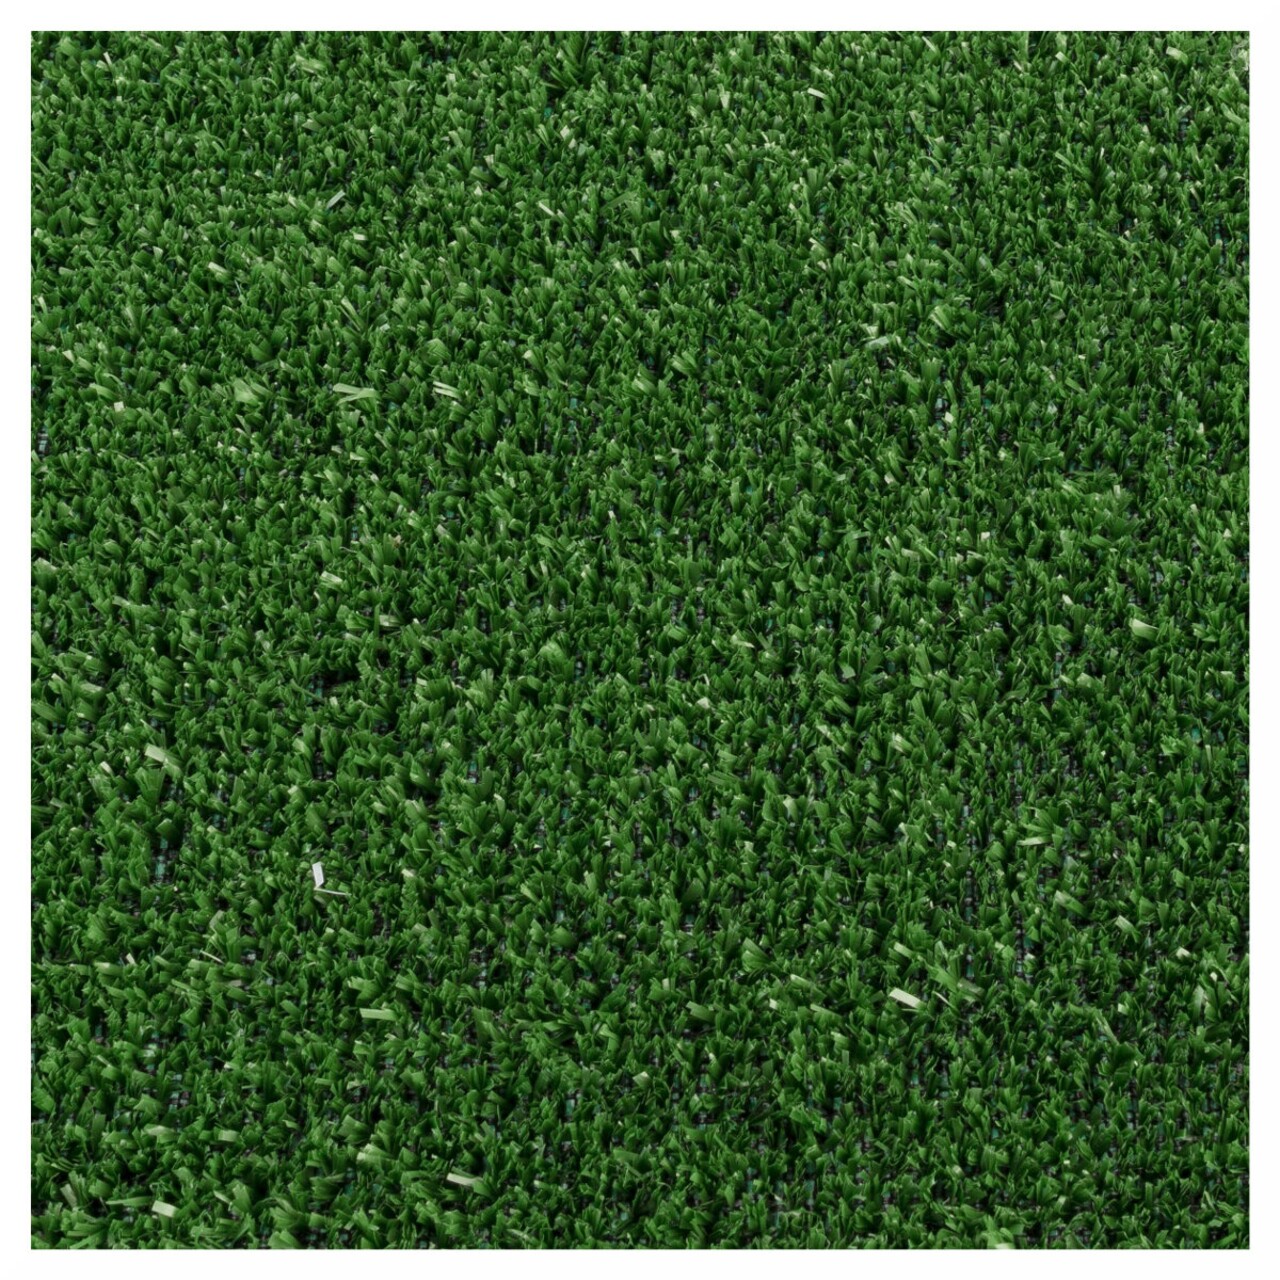 Gazon Artificial Evergreen 5 Mm, Decorino, 133x150 Cm, Polipropilena, Verde